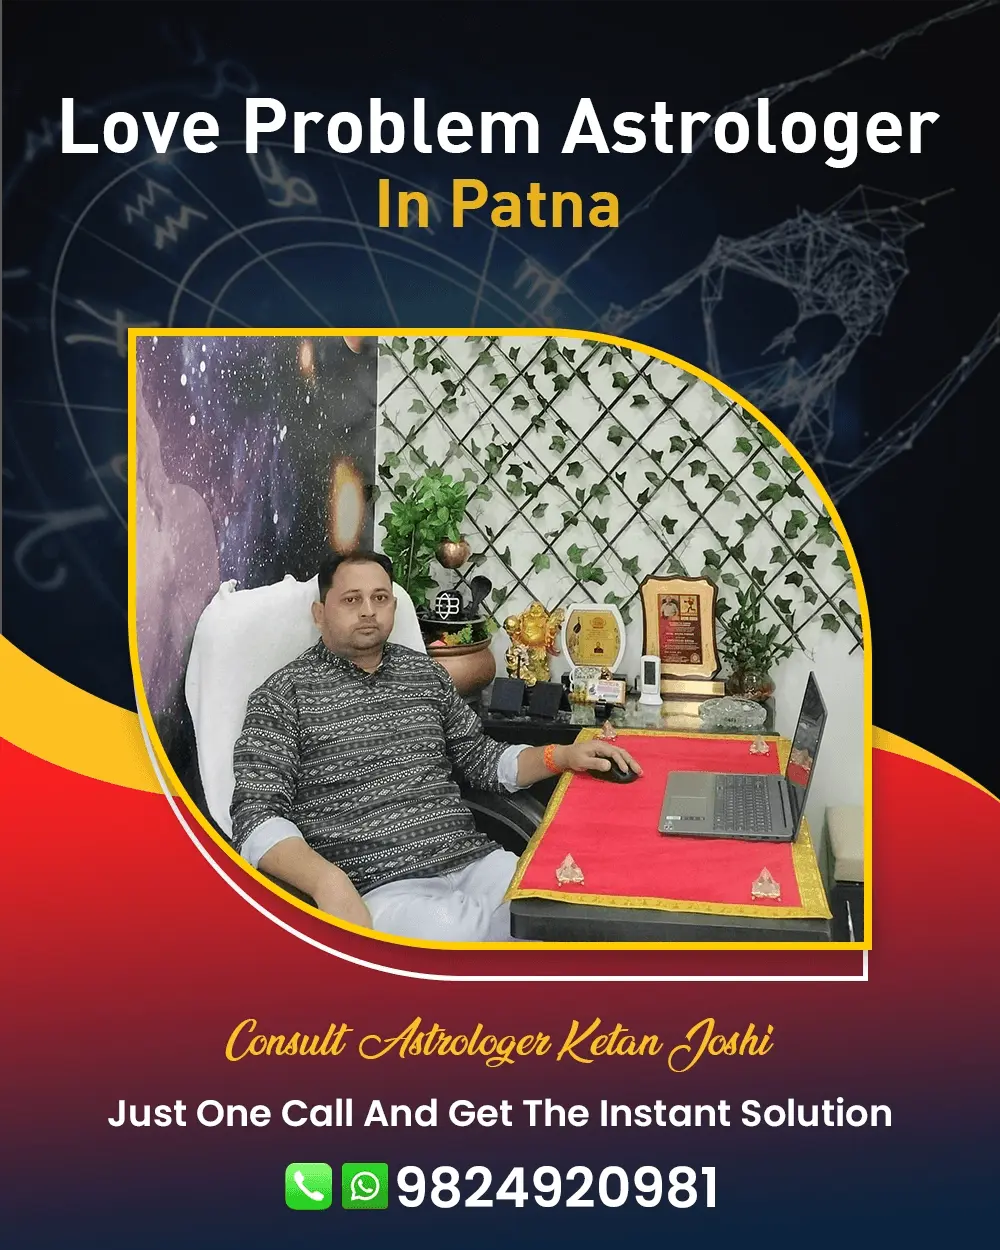 Love Problem Astrologer In Patna